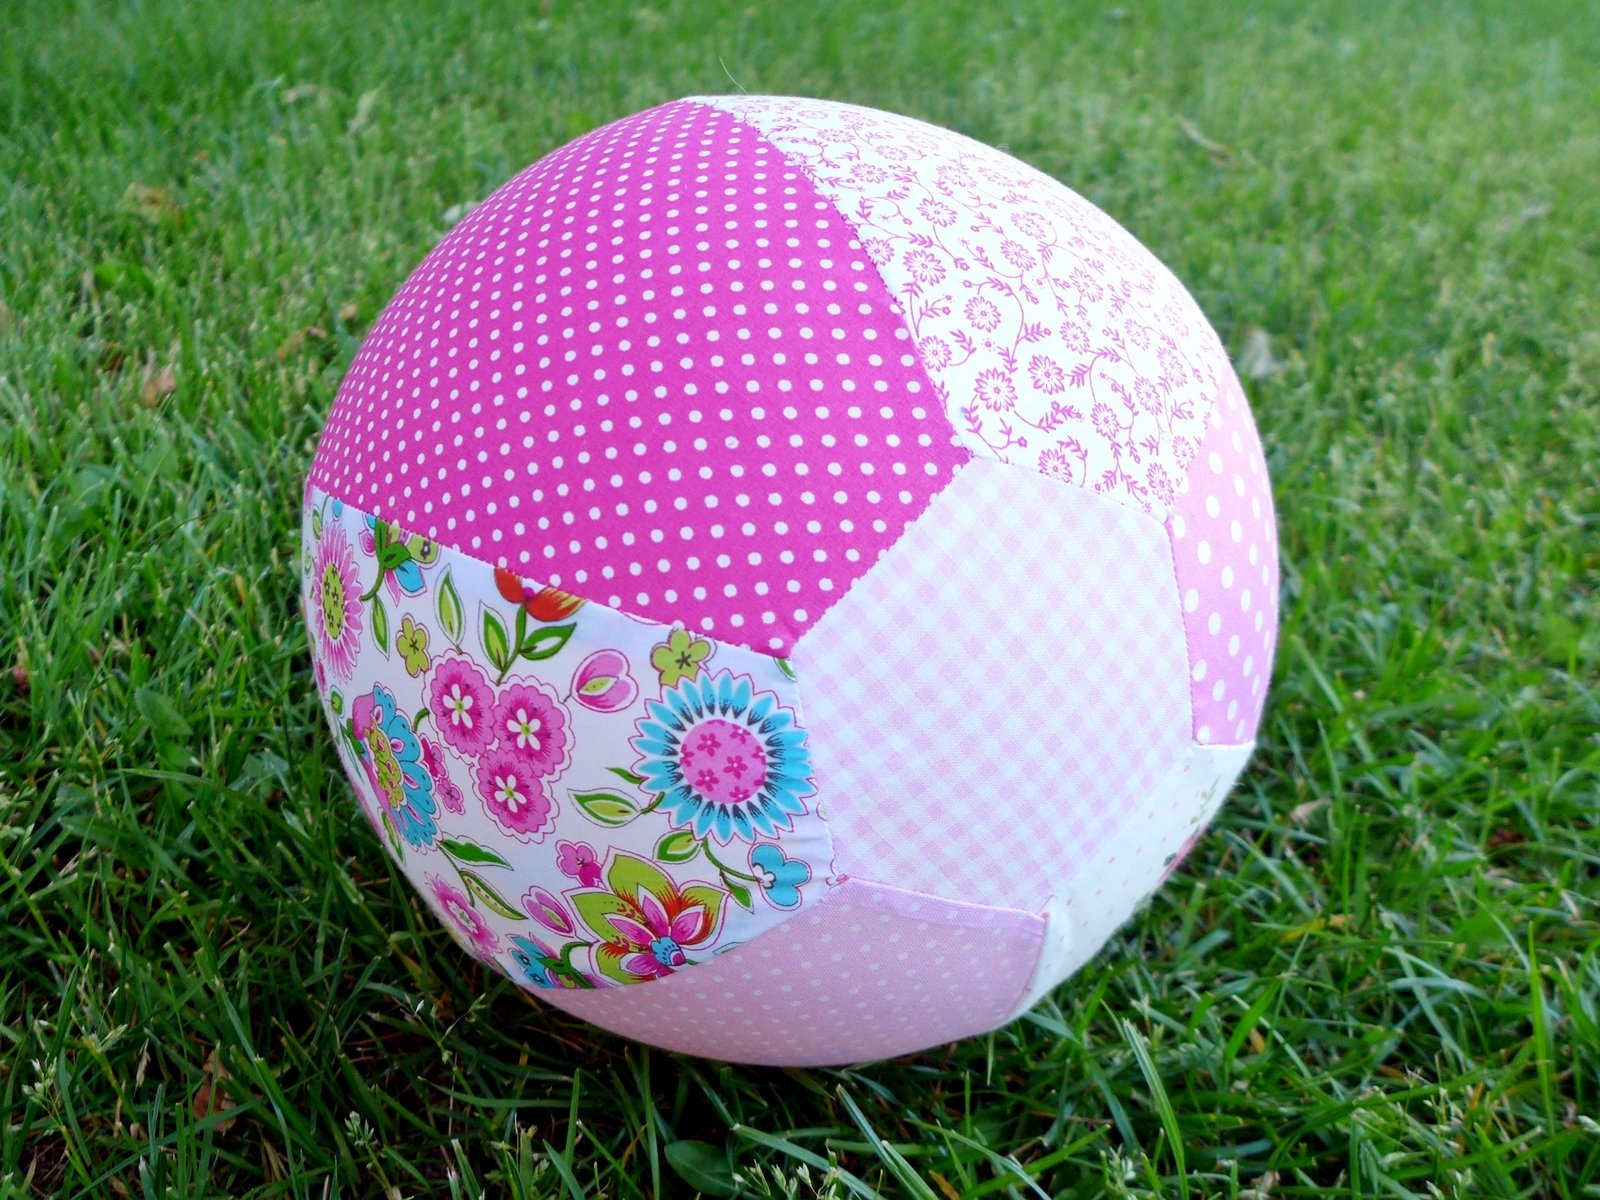 Blog-Inhaltsbild für 'Spielball to go oder Luftballonhülle - Gratis Nähanleitung'